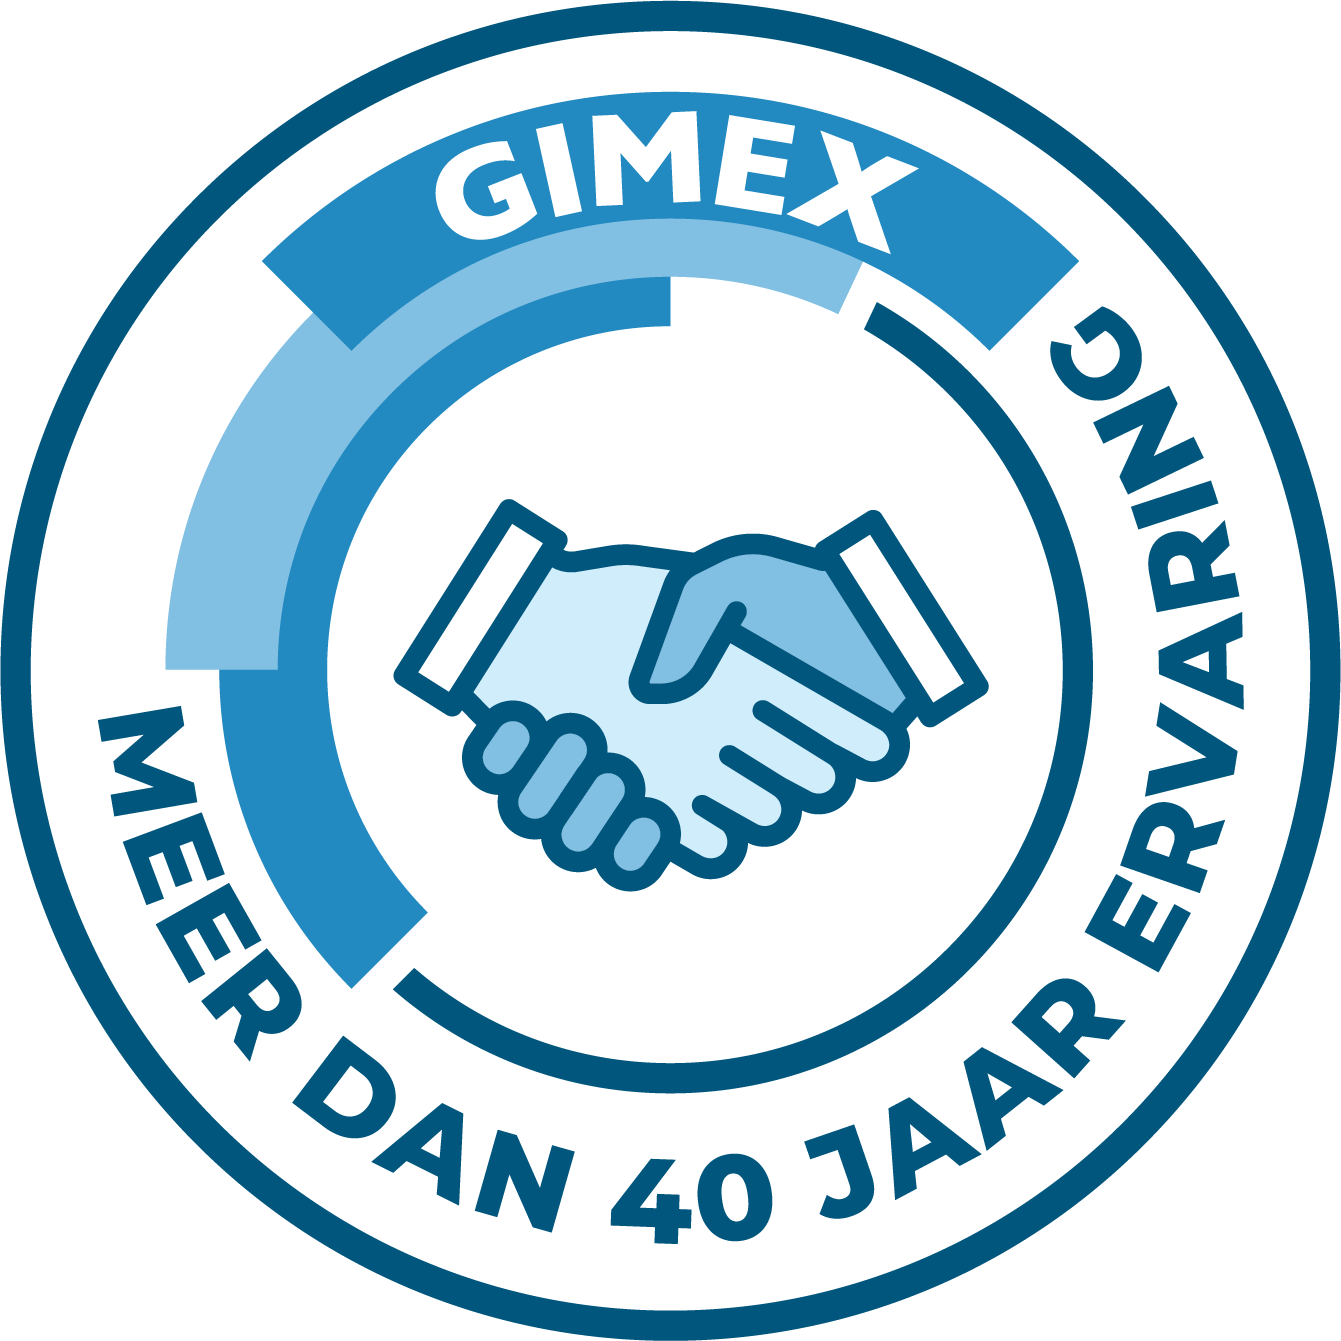 GIMEX Keurmerk NL